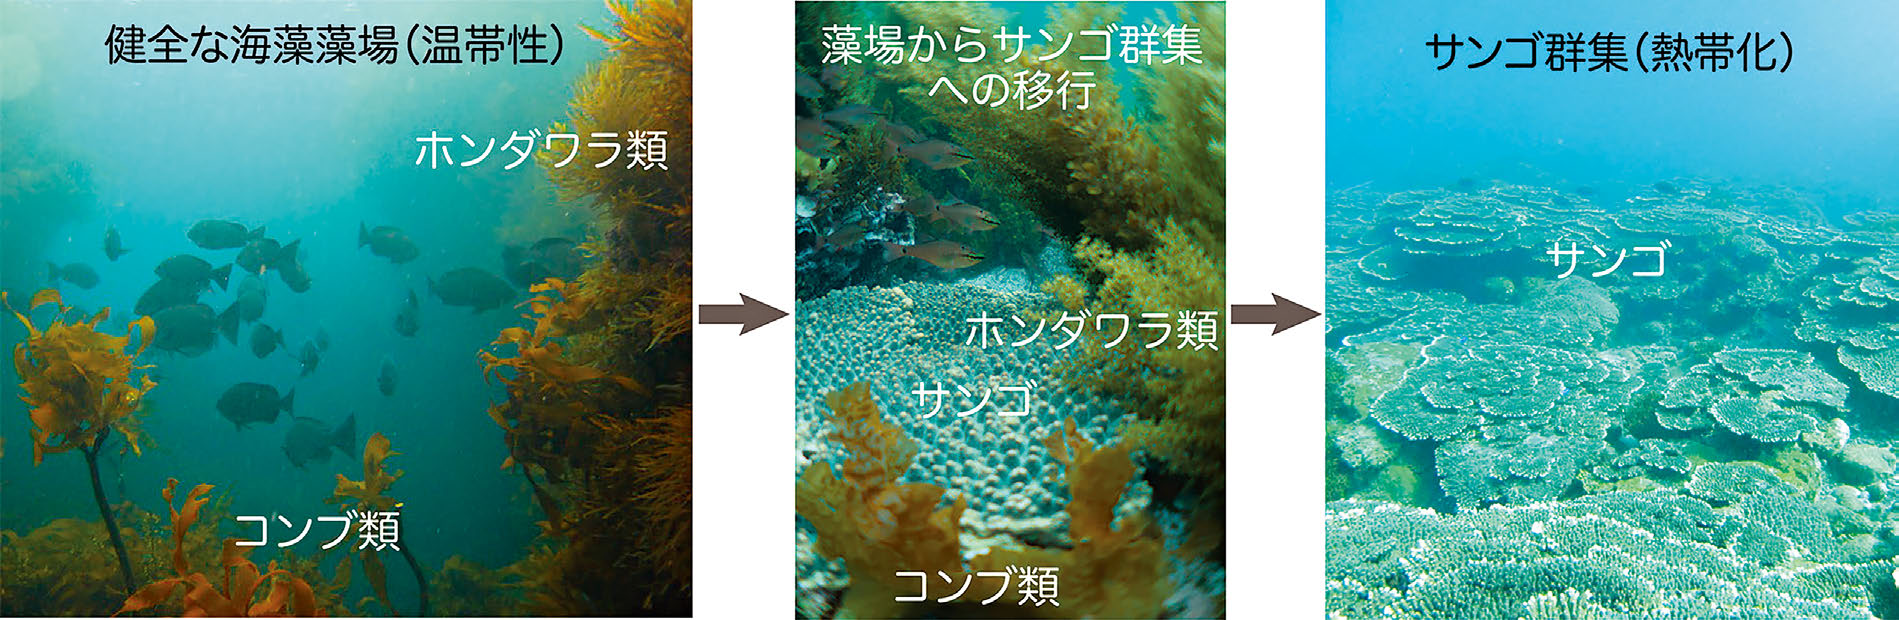 温帯における本来の海藻藻場（温帯性のコンブ類とホンダワラ類が主体）から、海藻とサンゴが共存する群集を経て、熱帯化したサンゴ主体の群集へ至るまでの、各移行段階を示した図